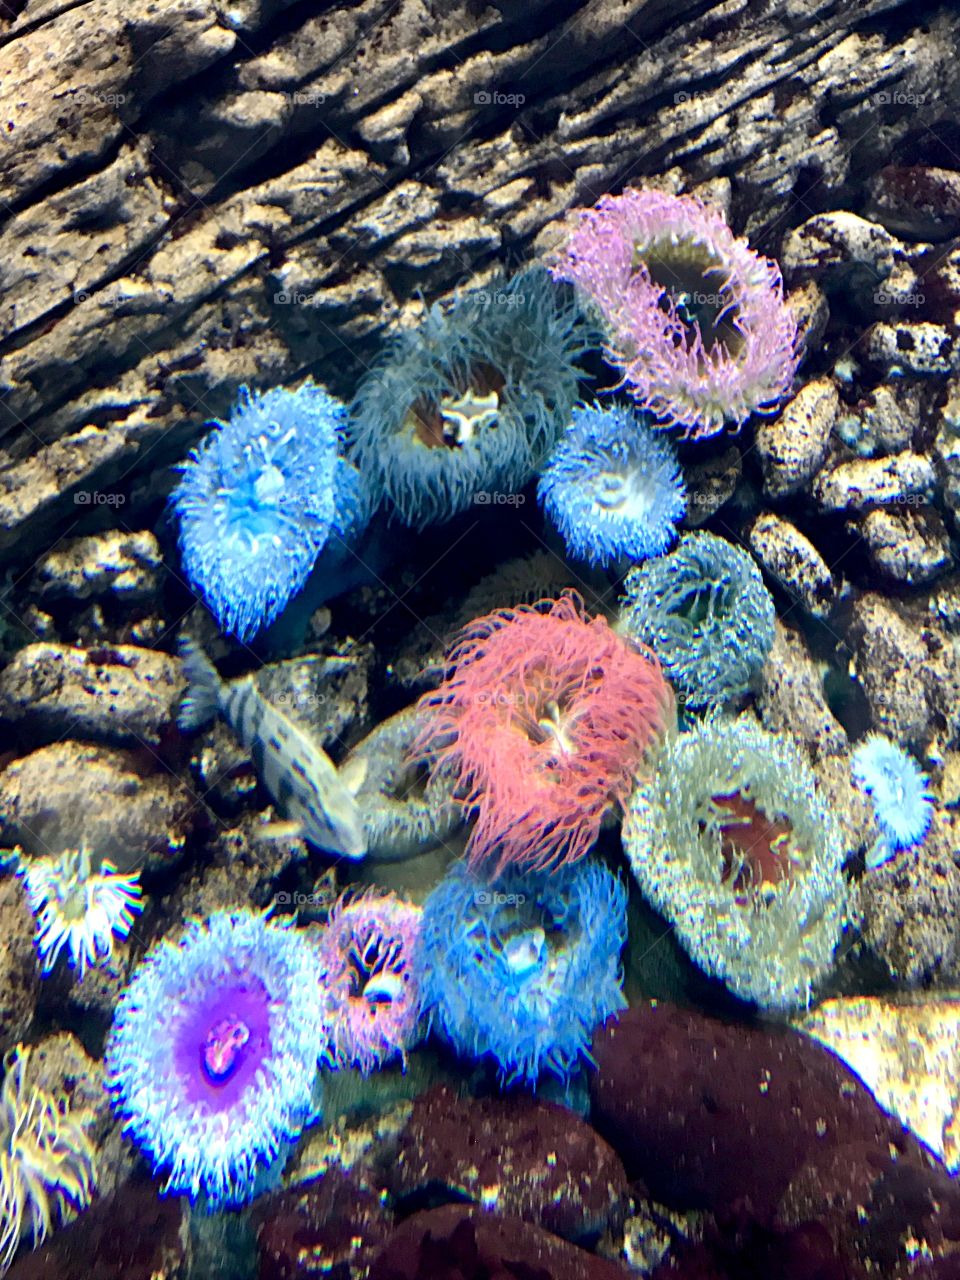 Colorful anemones at the Lisbon aquarium